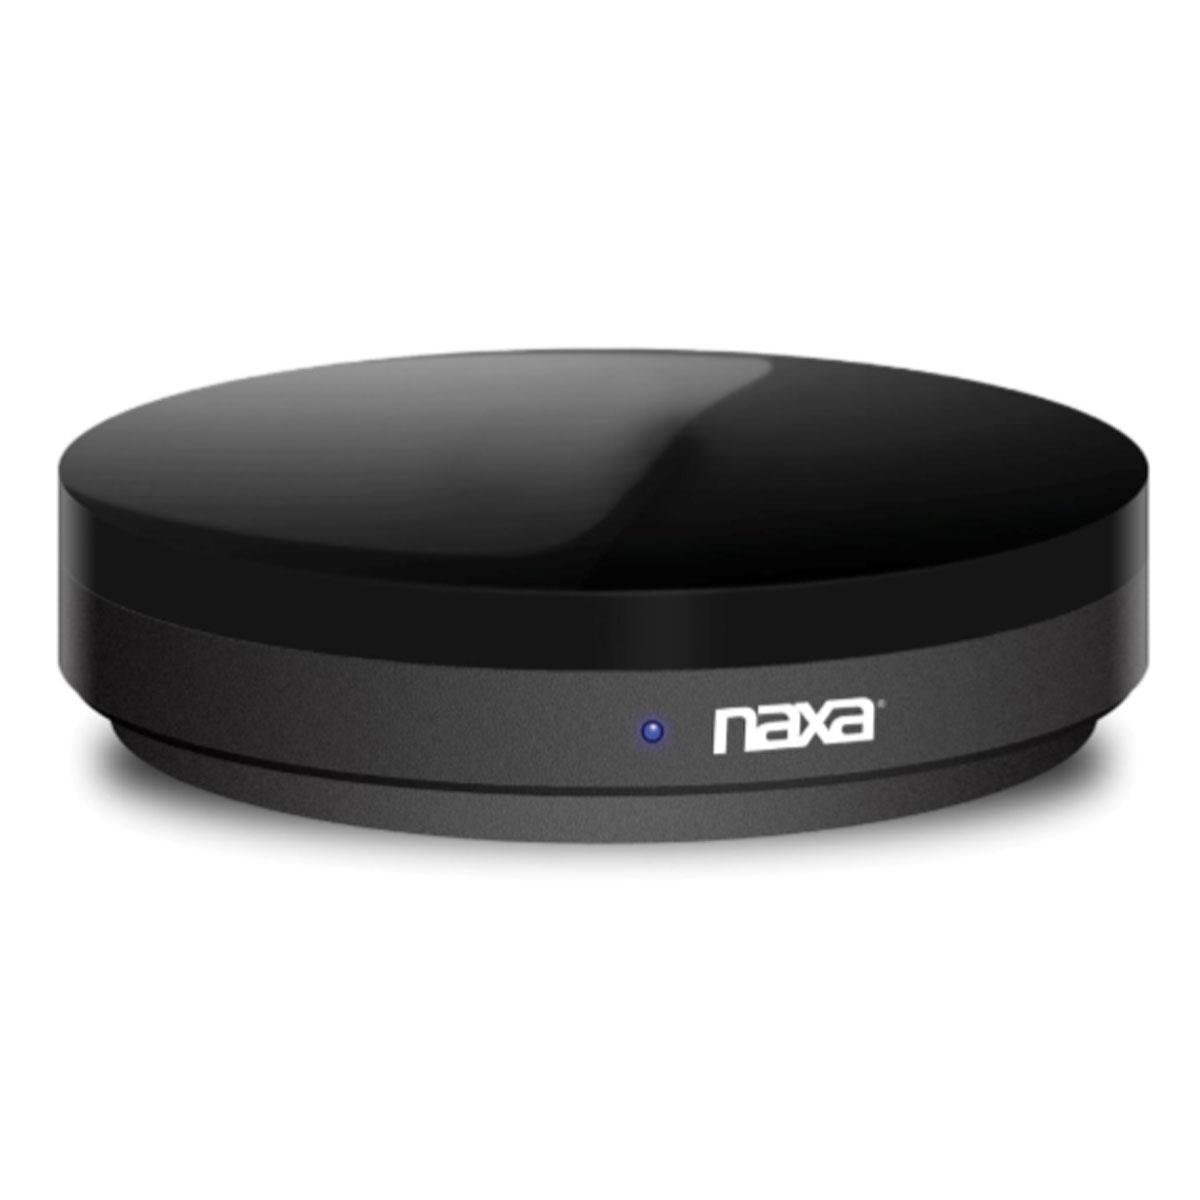 Image of Naxa NSH-500 WI-Fi Universal Smart Remote